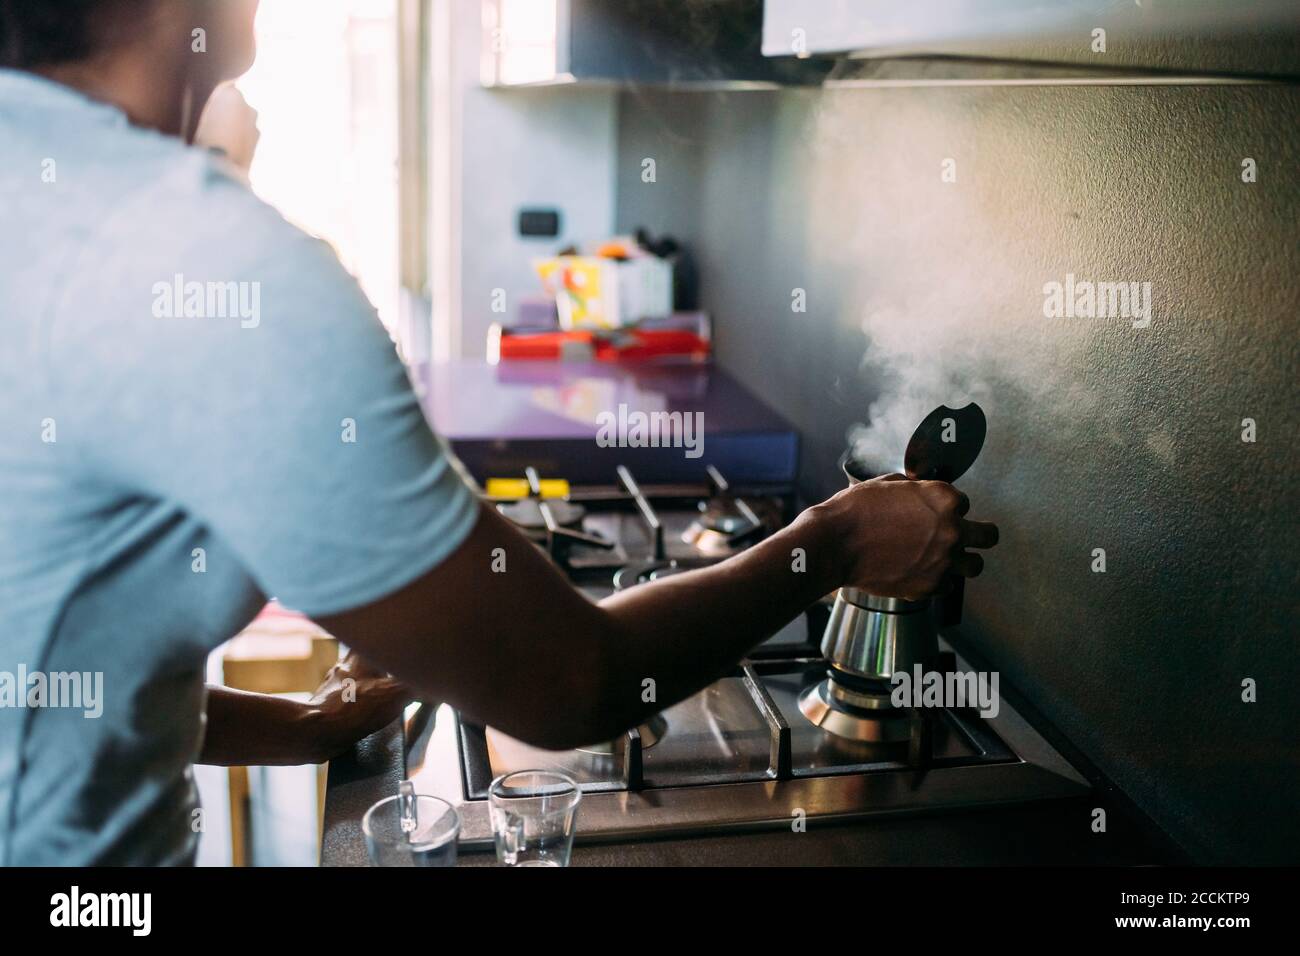 https://c8.alamy.com/compes/2ccktp9/primer-plano-de-la-mujer-haciendo-cafe-en-la-cocina-2ccktp9.jpg